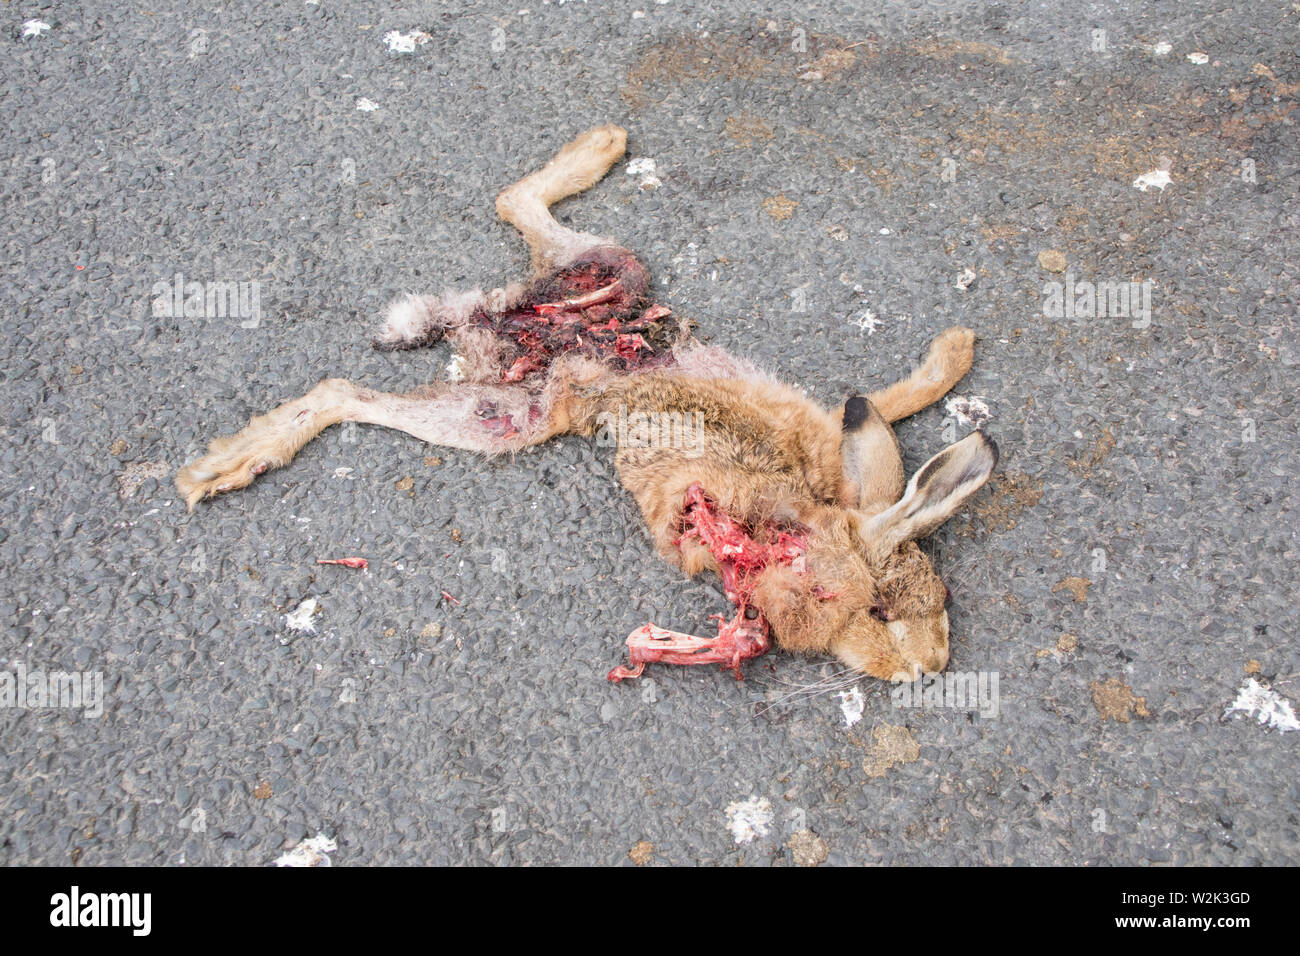 Europäische Hase oder Feldhase getötet auf einer Straße, England, Großbritannien Stockfoto